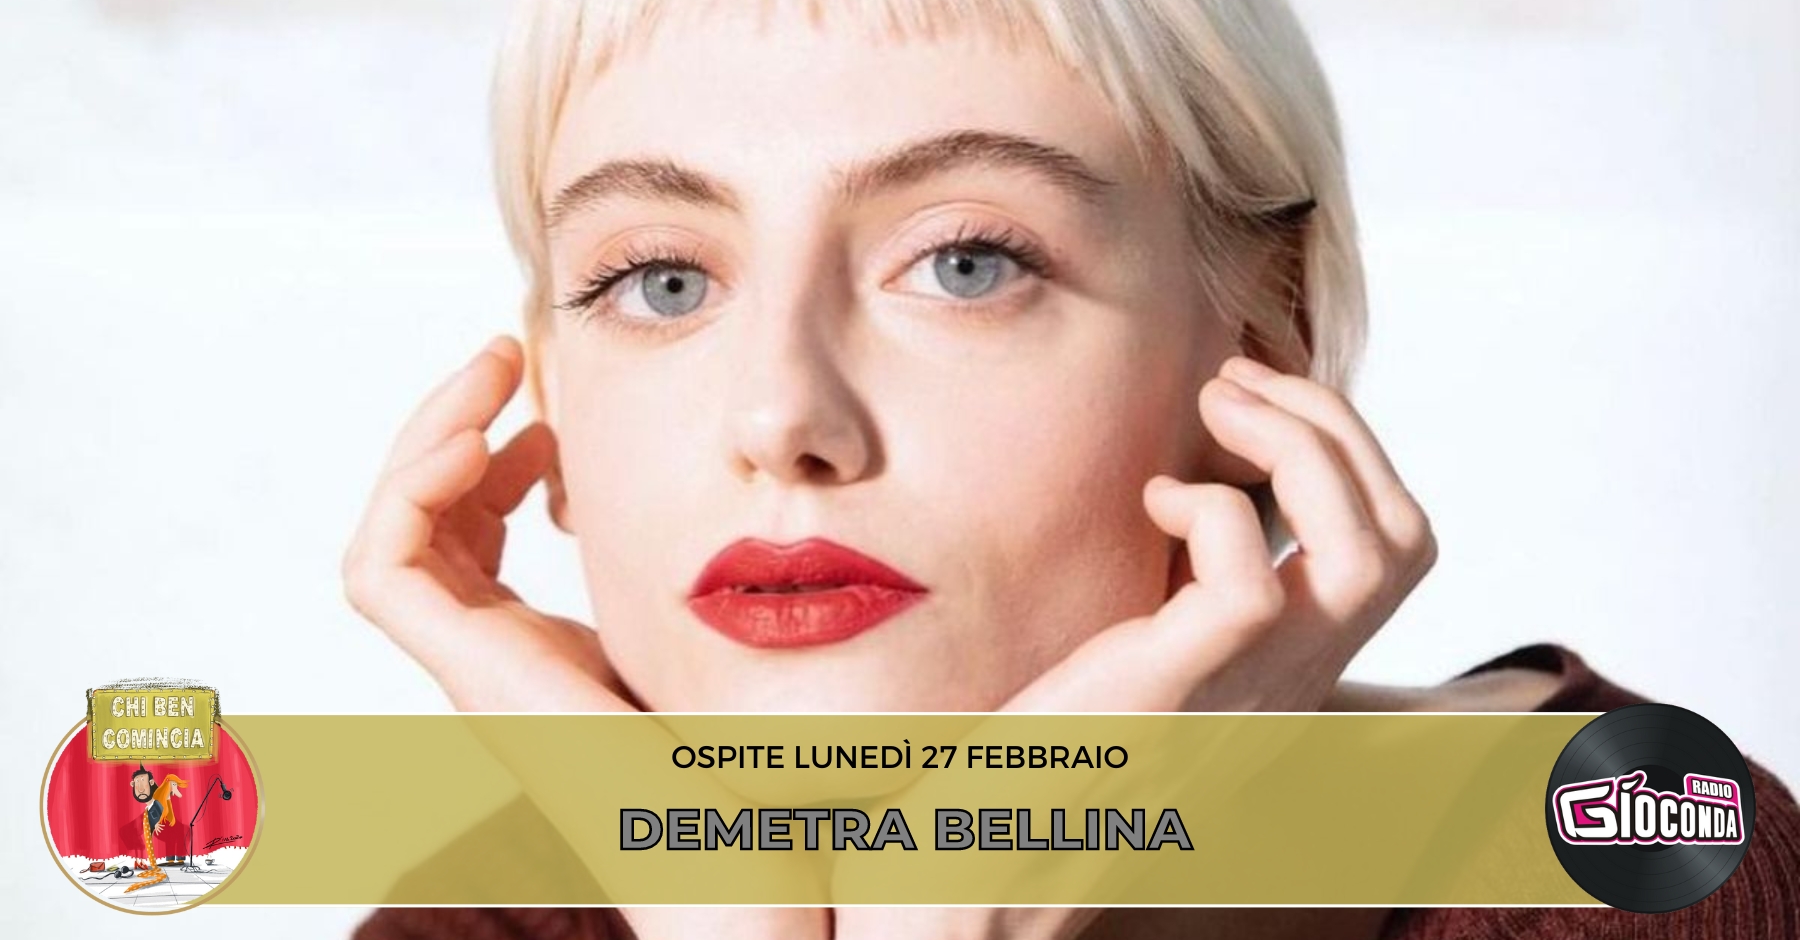 L'attrice e modella Demetra Bellina è l'ospite della nuova puntata di "Chi ben comincia" in onda lunedì 27 febbraio alle 18.00